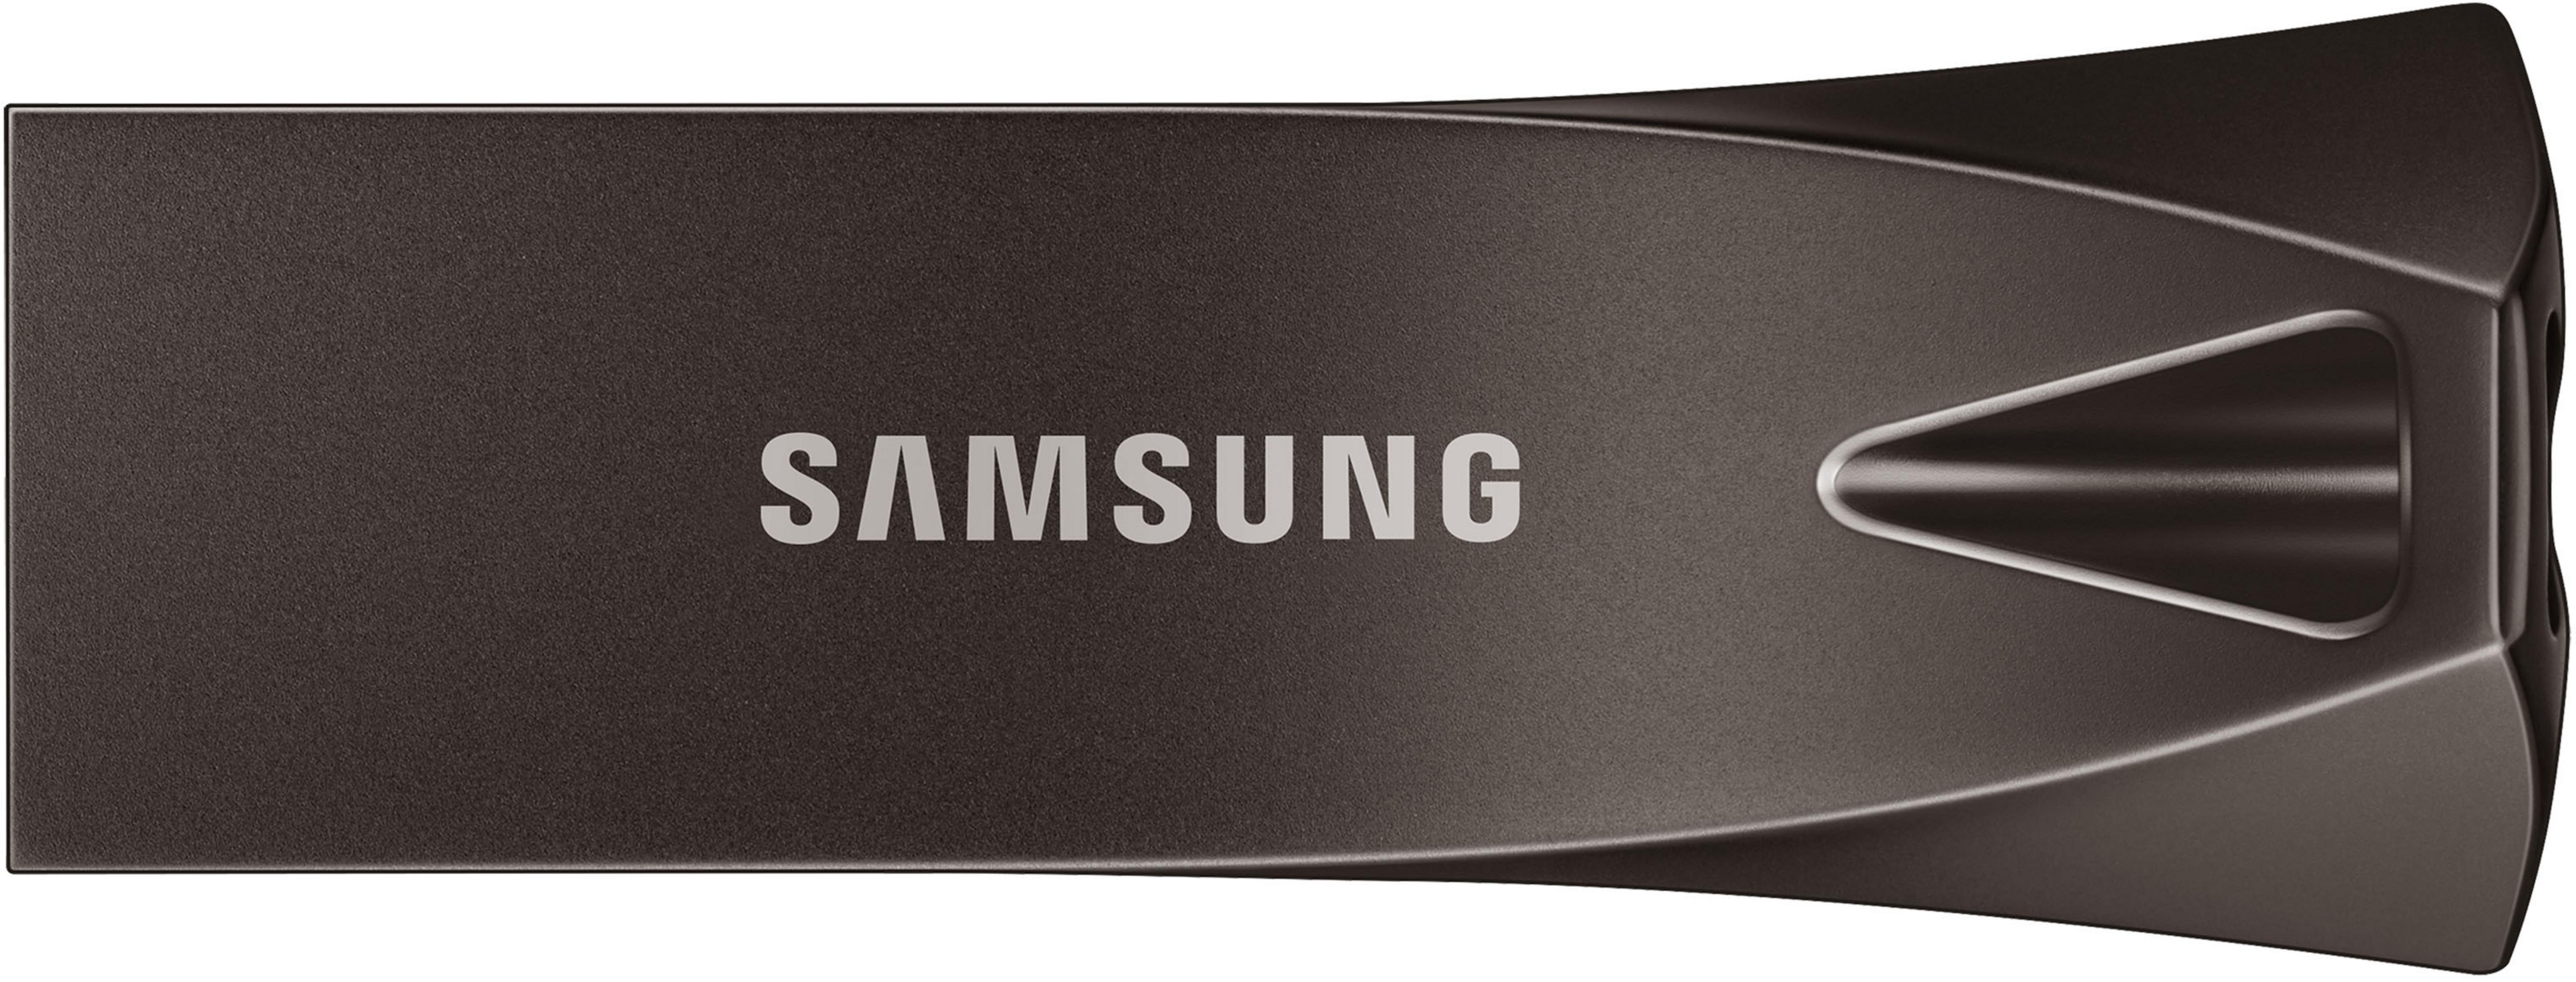 SAMSUNG DRIVE Grau, USB-Stick GB) USB (Titan MUF-128BE4/EU TITAN 128 128GB BAR PLUS